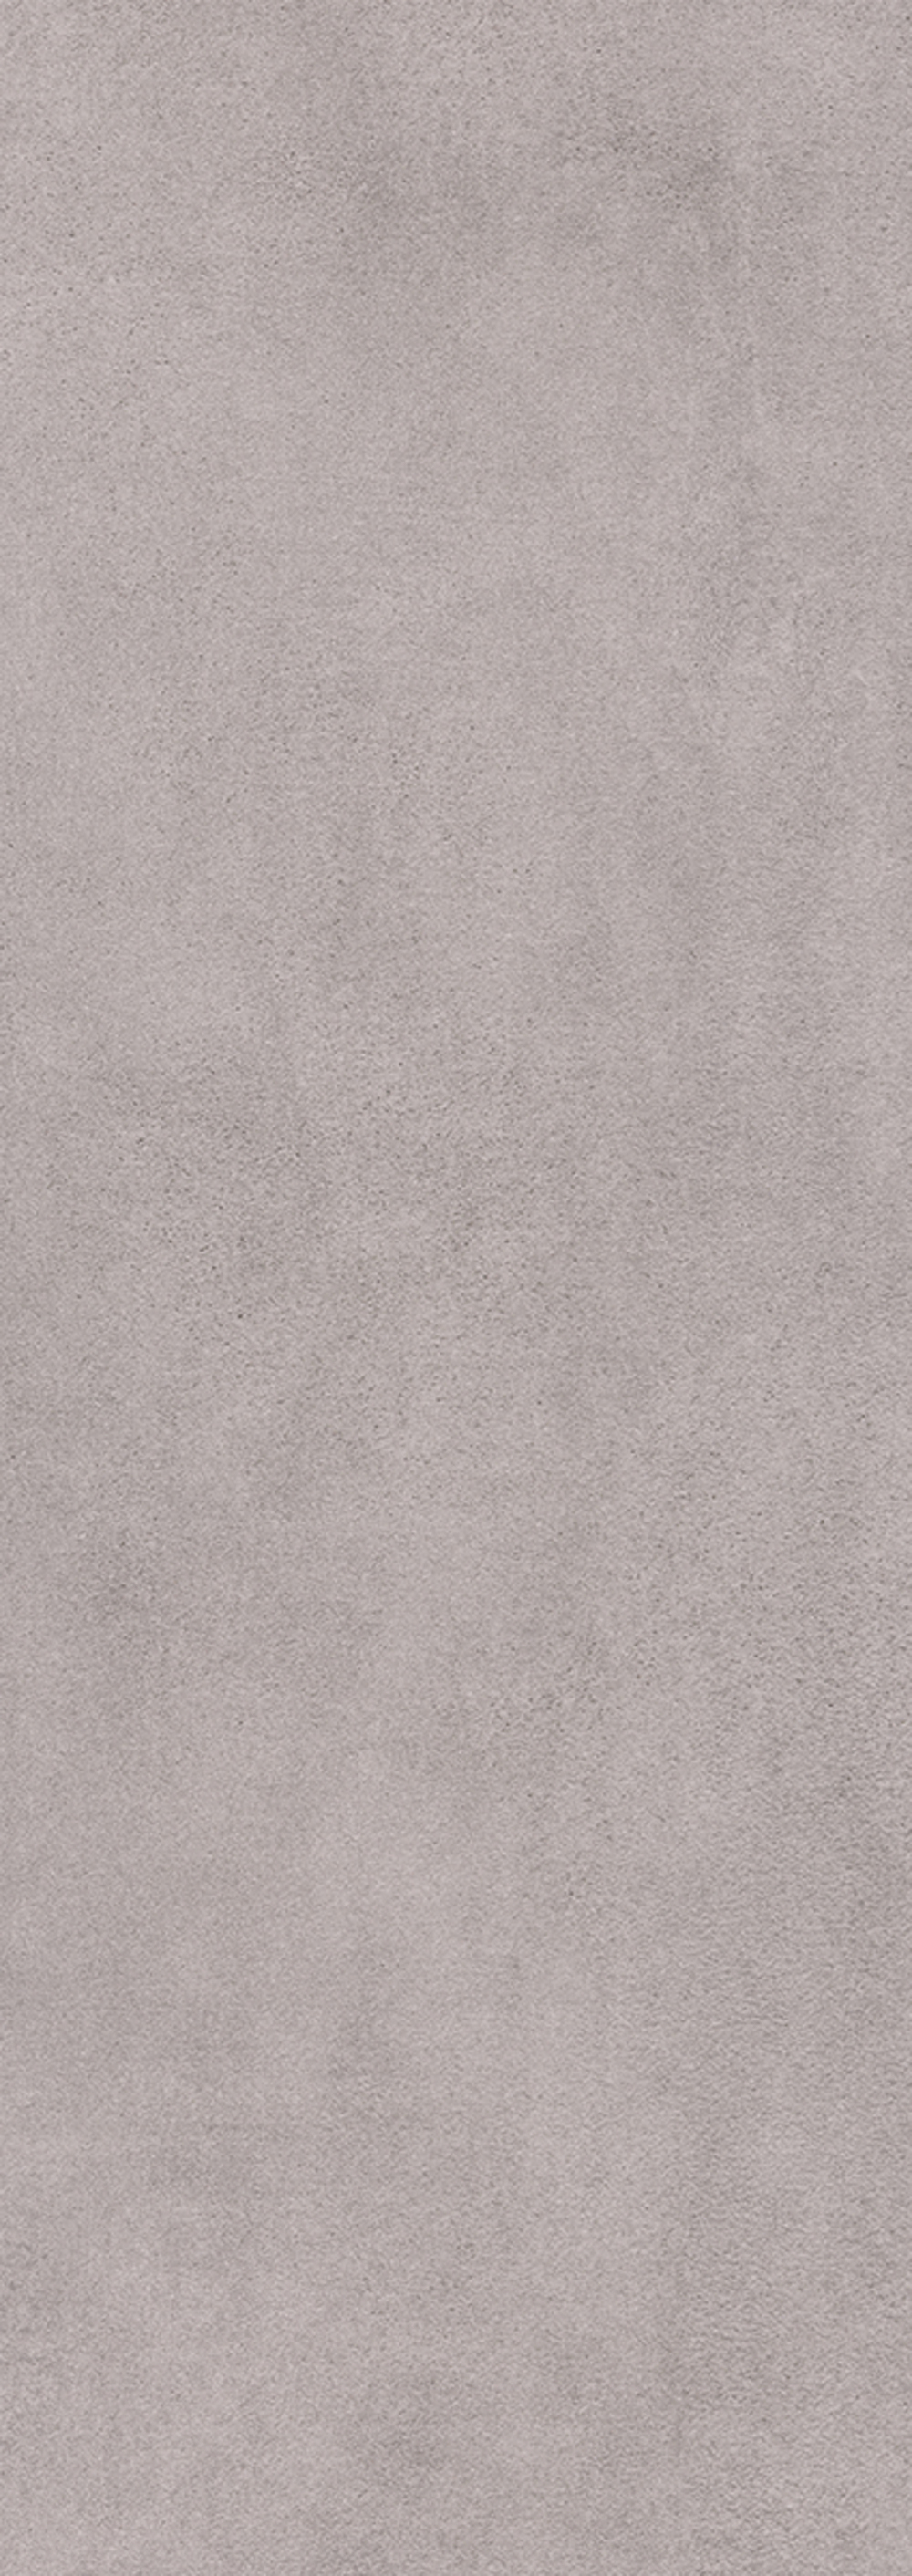 91090618 Керамическая плитка Alba Grigio 25.1x70.9см 1.25 м² цвет черный STLM-0478850 КЕРЛАЙФ